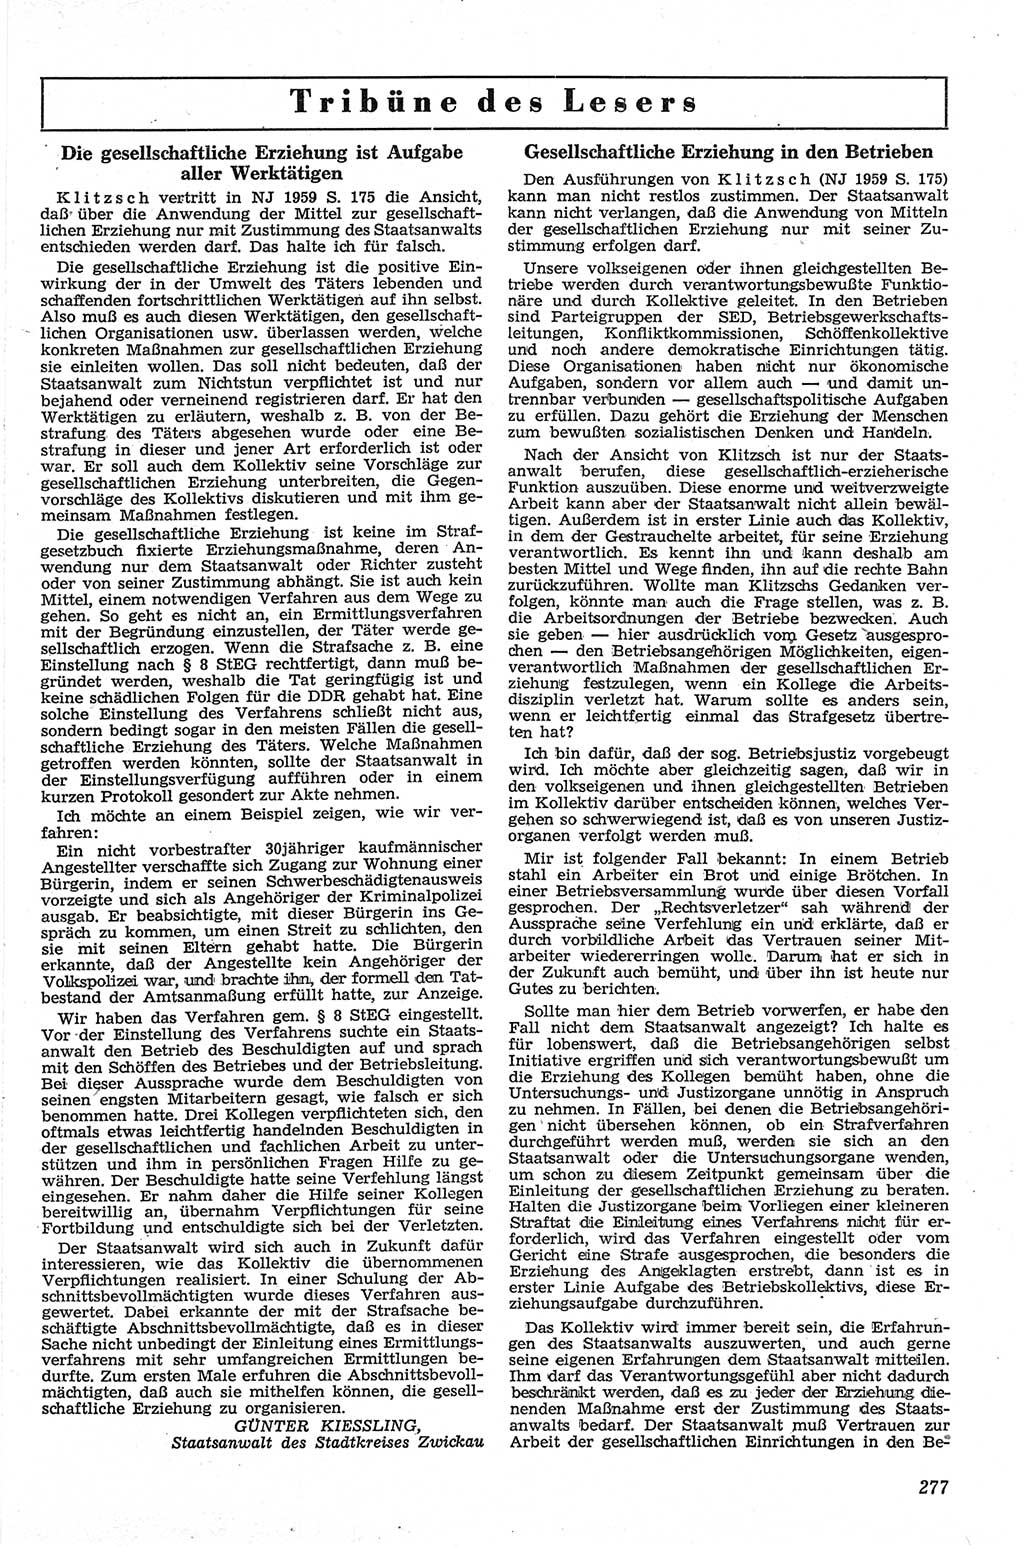 Neue Justiz (NJ), Zeitschrift für Recht und Rechtswissenschaft [Deutsche Demokratische Republik (DDR)], 13. Jahrgang 1959, Seite 277 (NJ DDR 1959, S. 277)